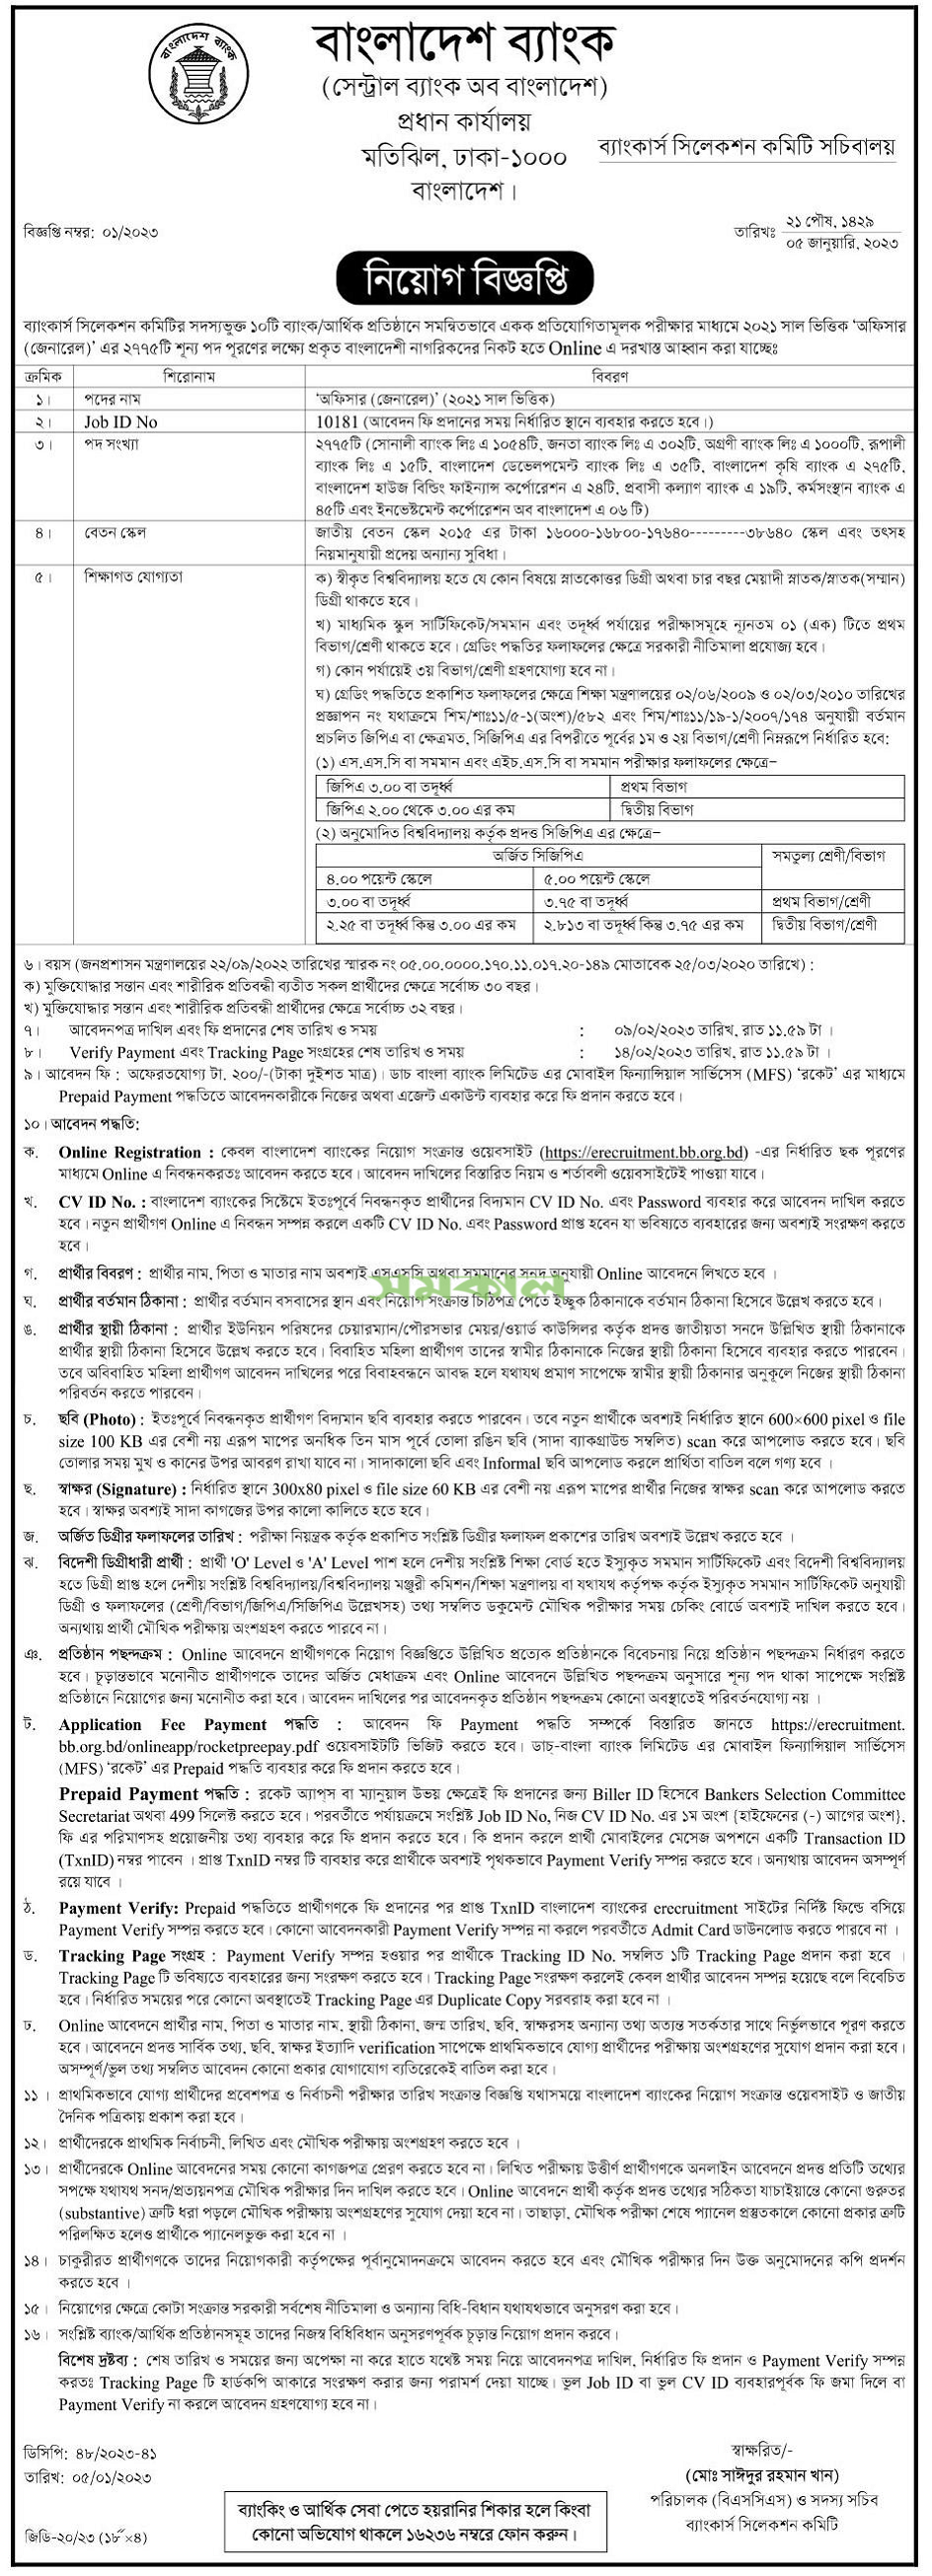 বাংলাদেশ ব্যাংকের চাকরির বিজ্ঞপ্তি ২০২৩ - erecruitment.bb.org.bd